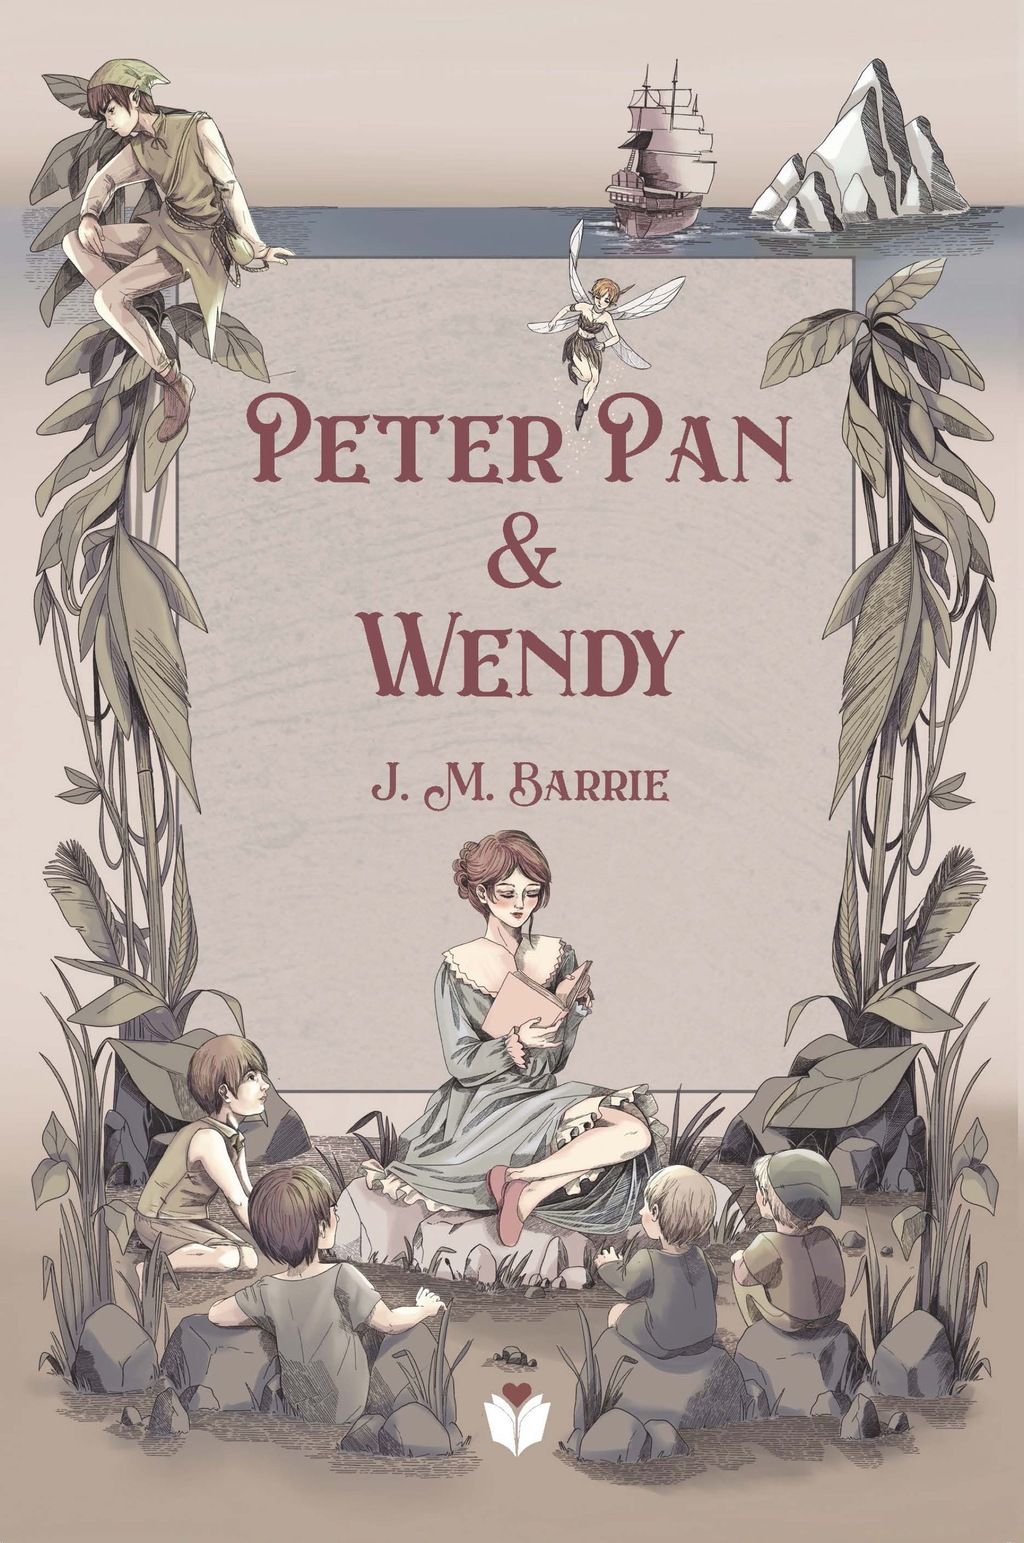 Coleção Os Melhores Contos - Peter Pan